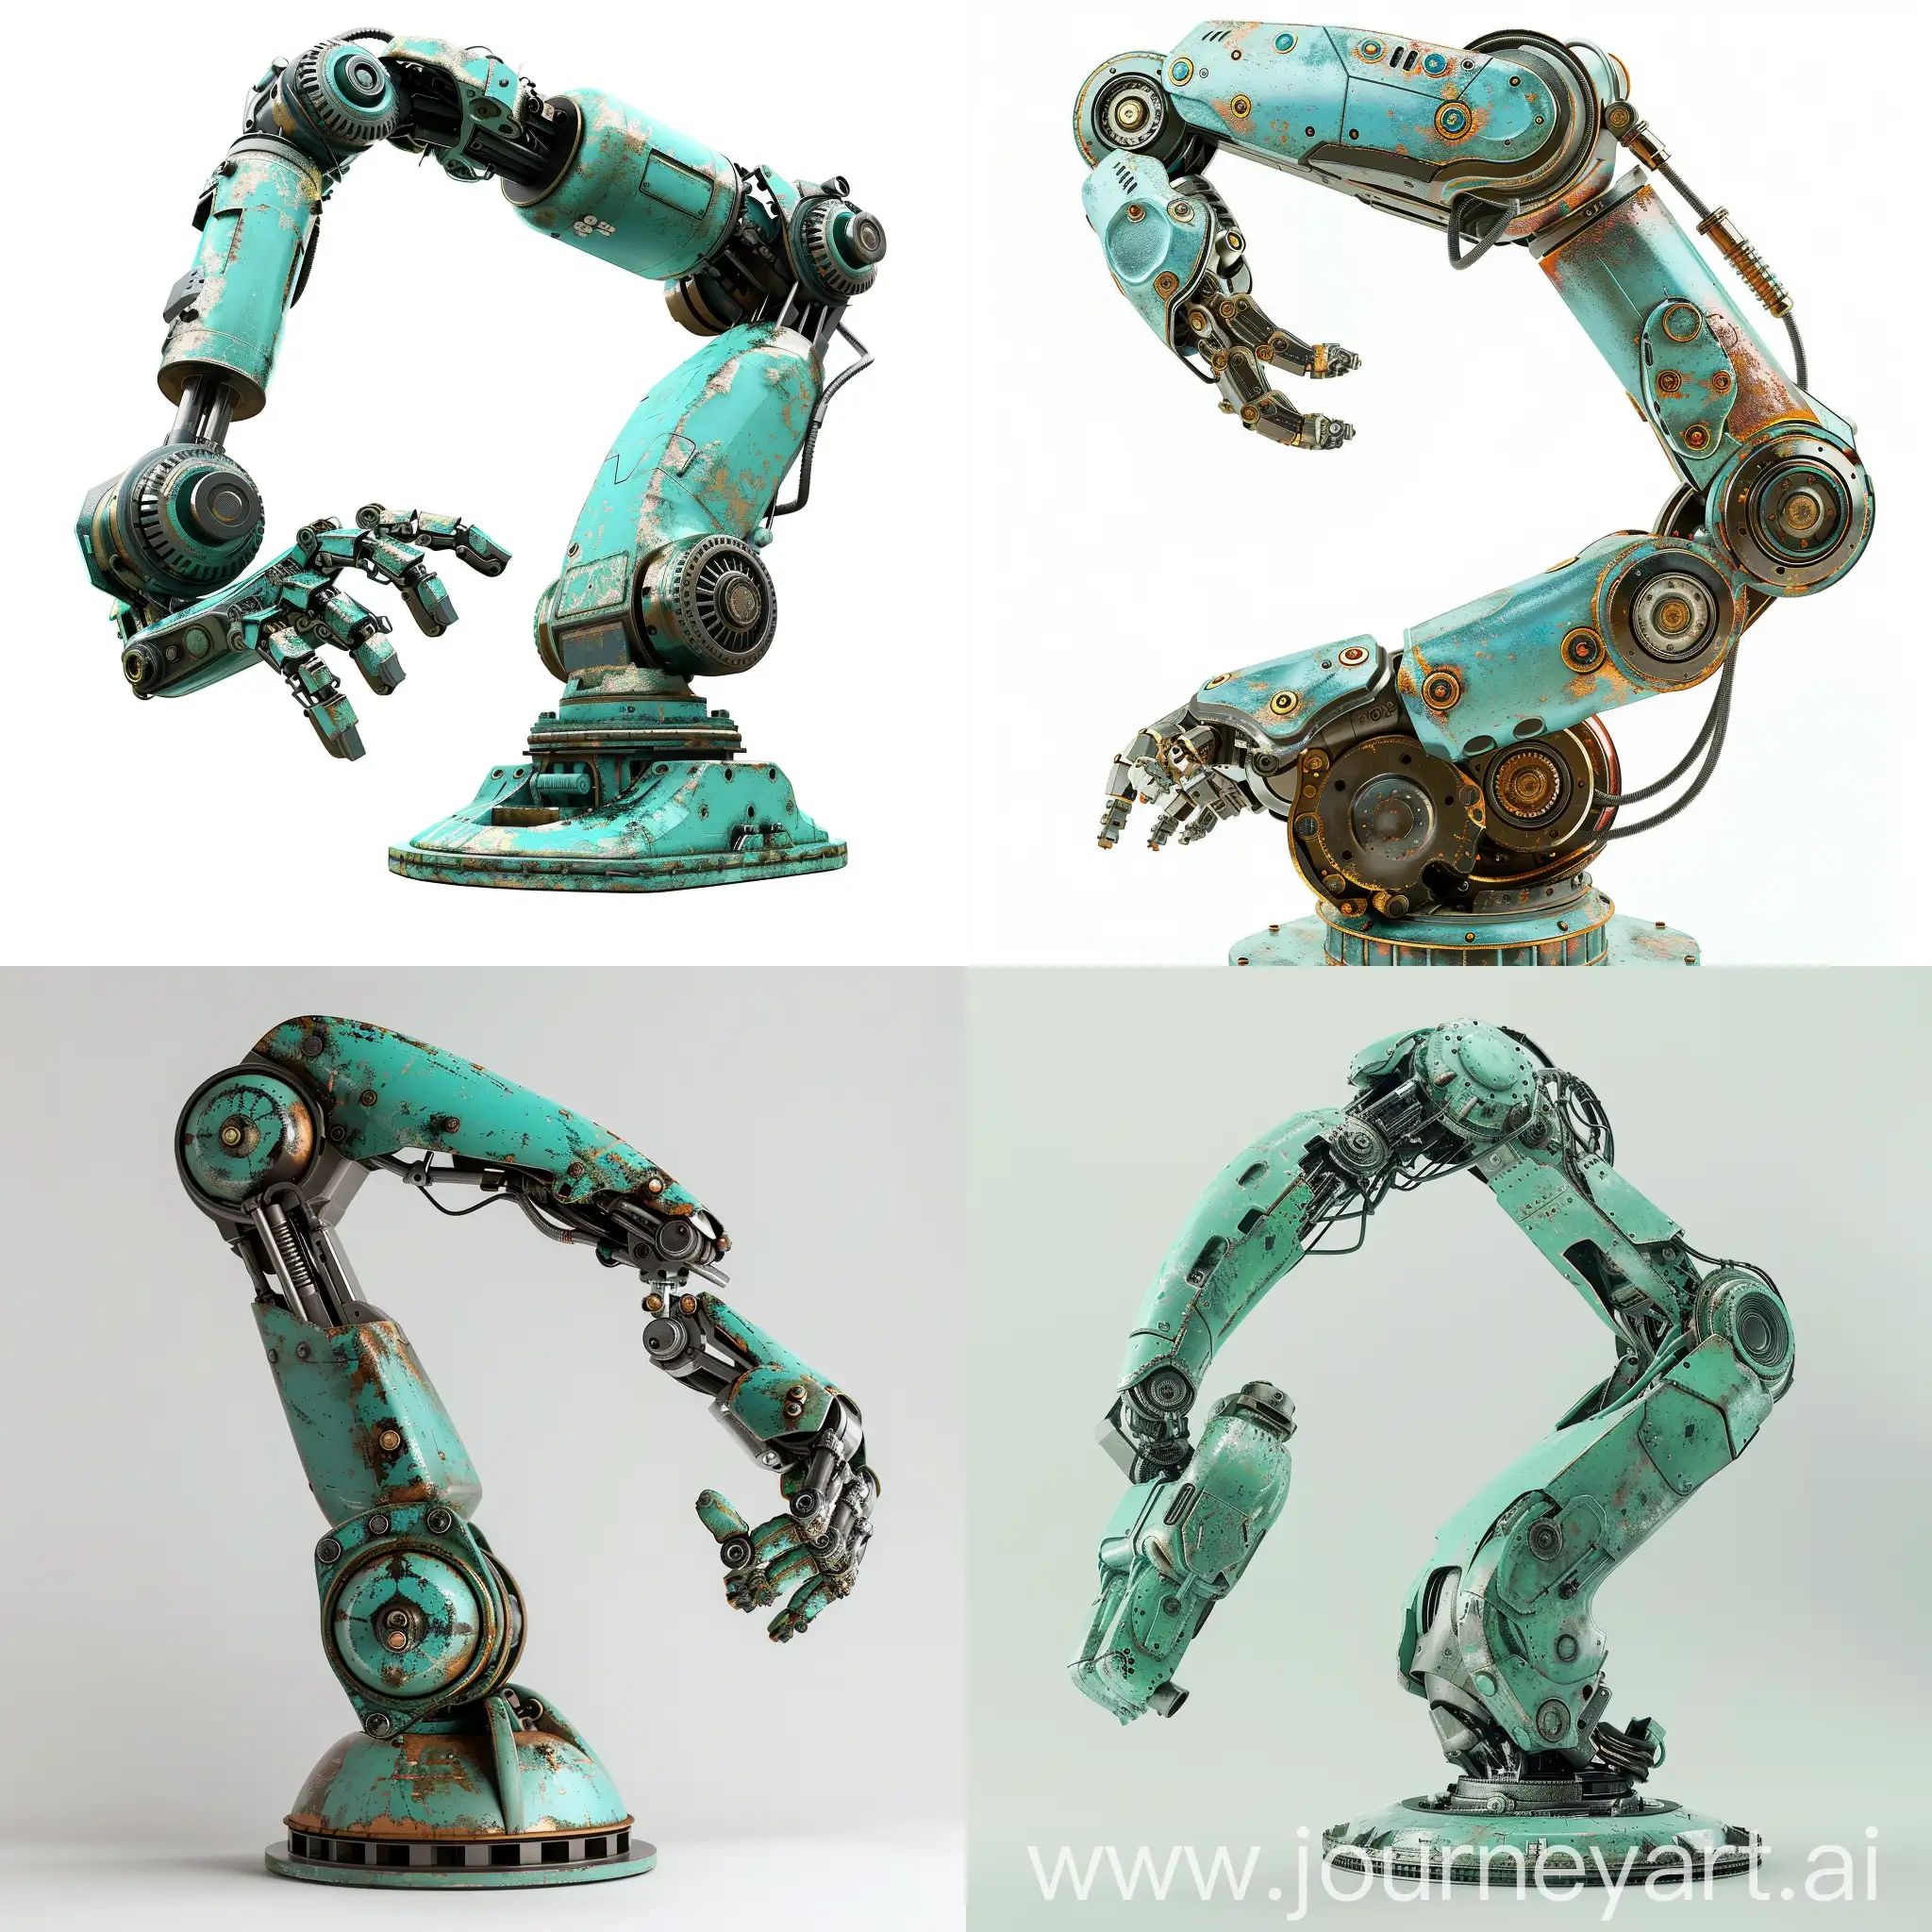 做一个车间使用的机器人手臂图片，白色背景，青绿色的外观，金属材质，单独一个模型